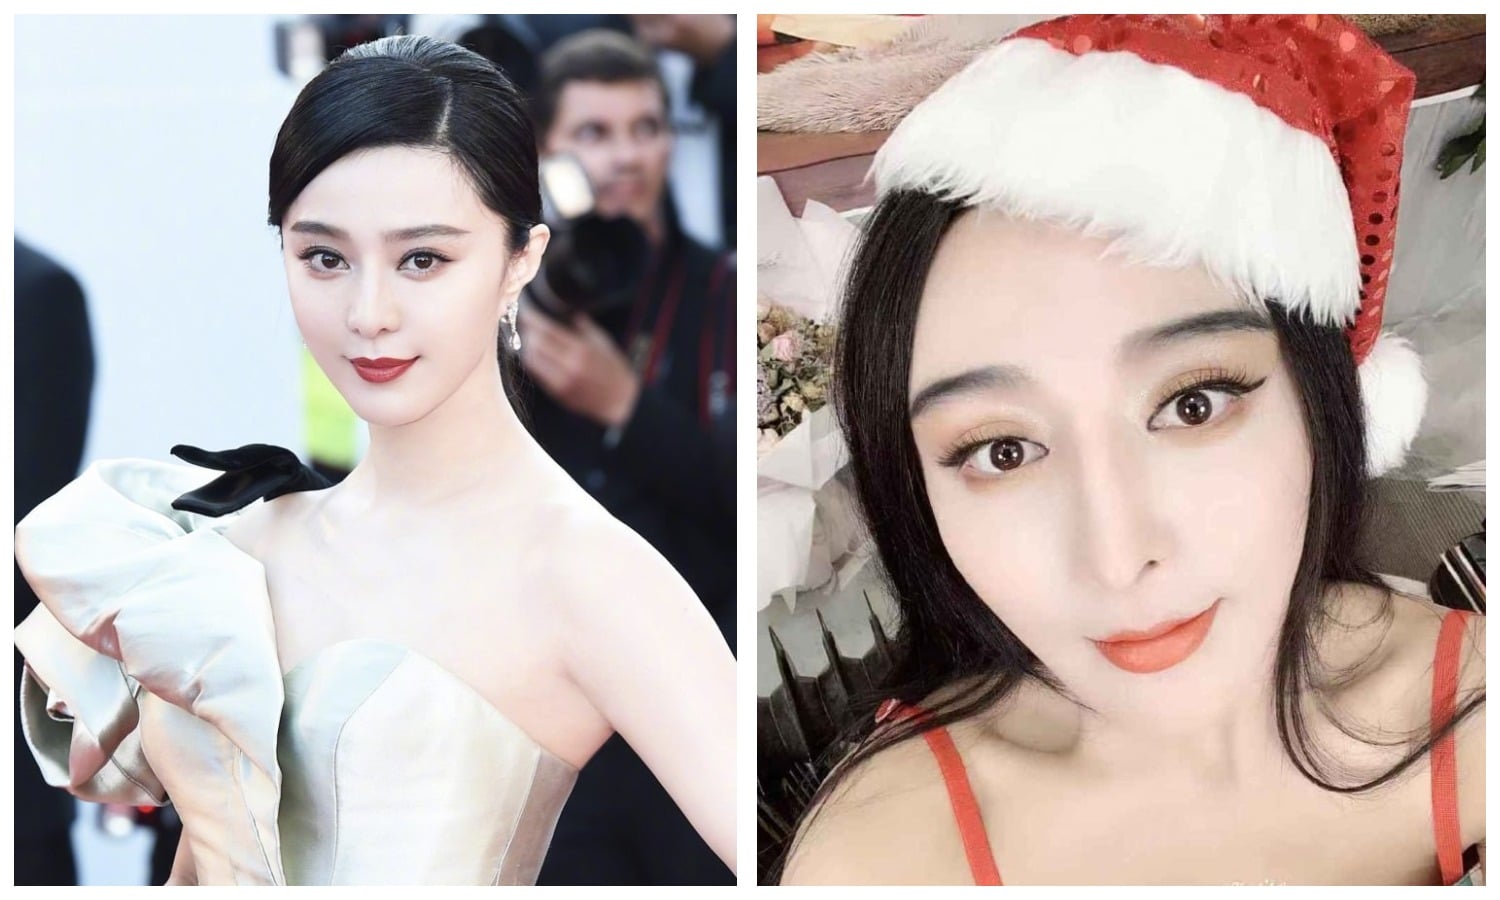 Защищая имя: как китайская актриса подала в суд на своего двойника